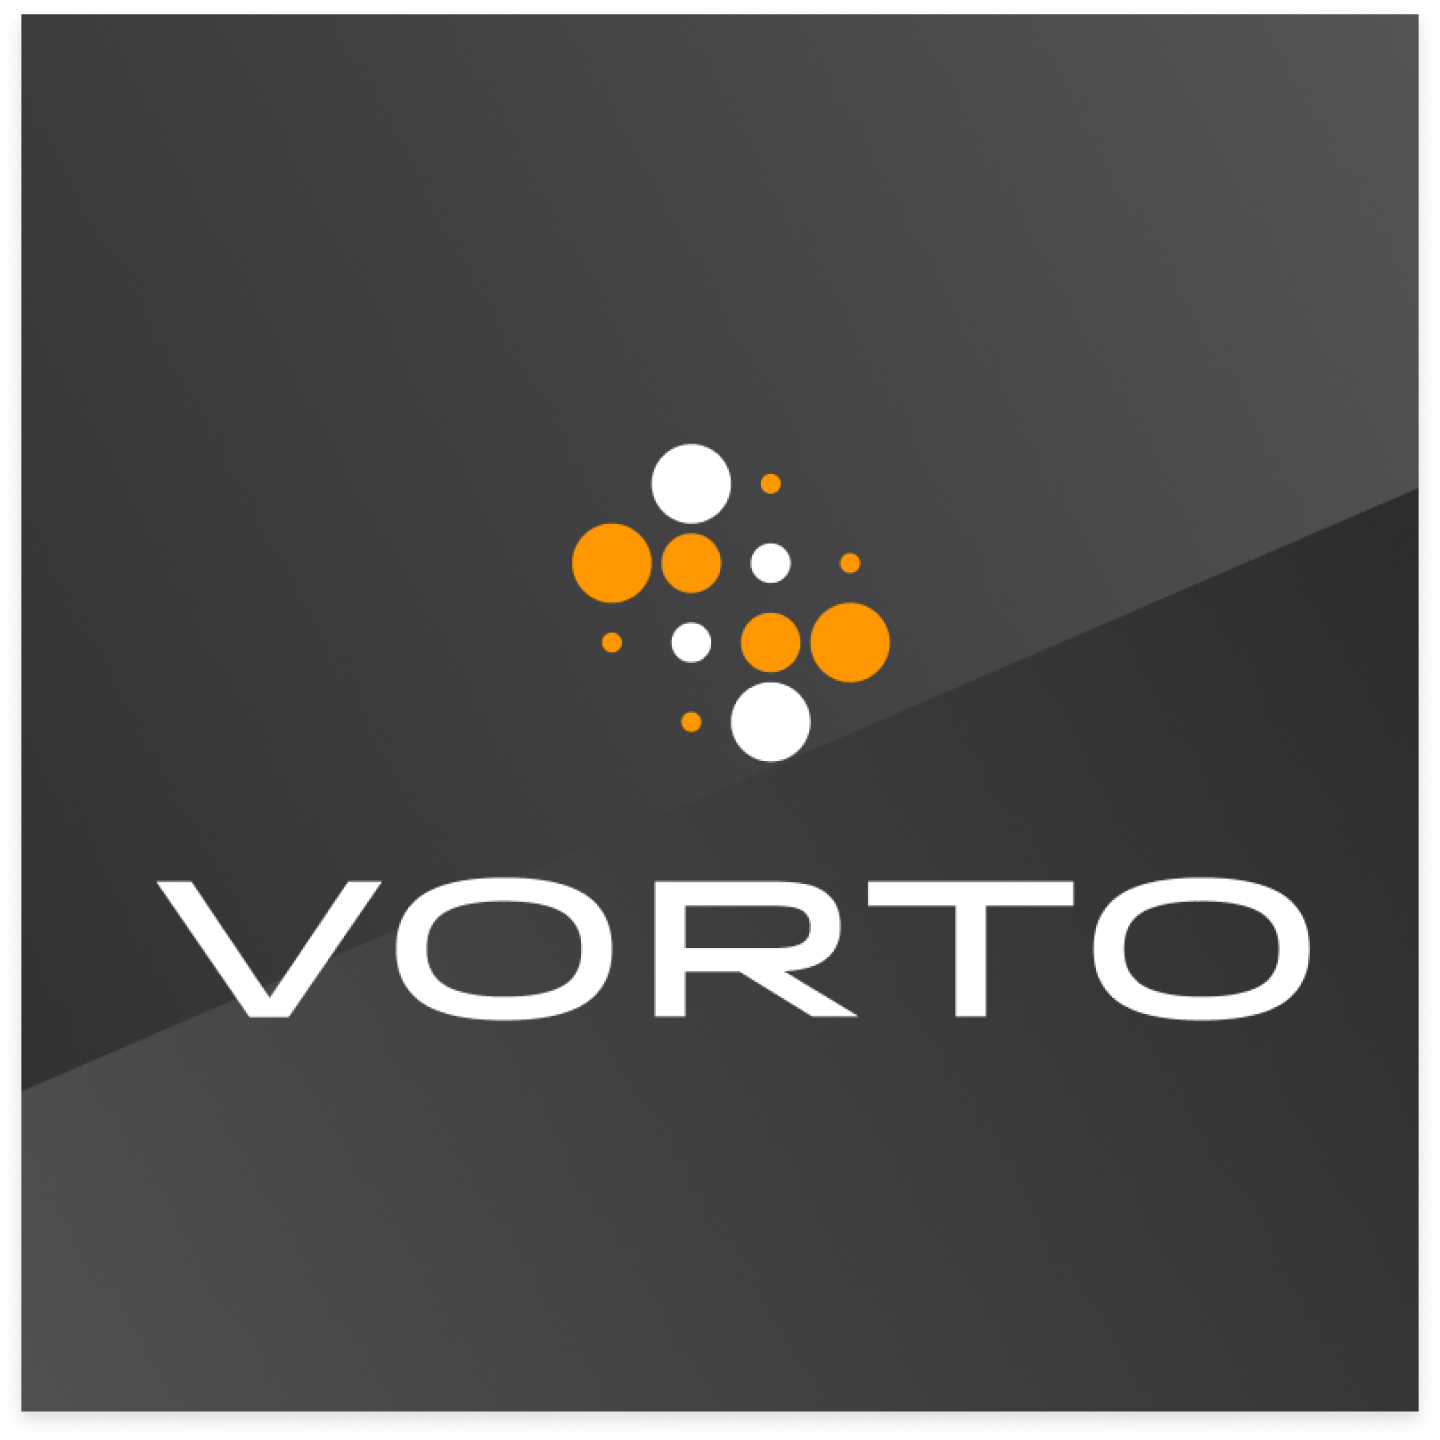 Vorto Press Release Lg@2x